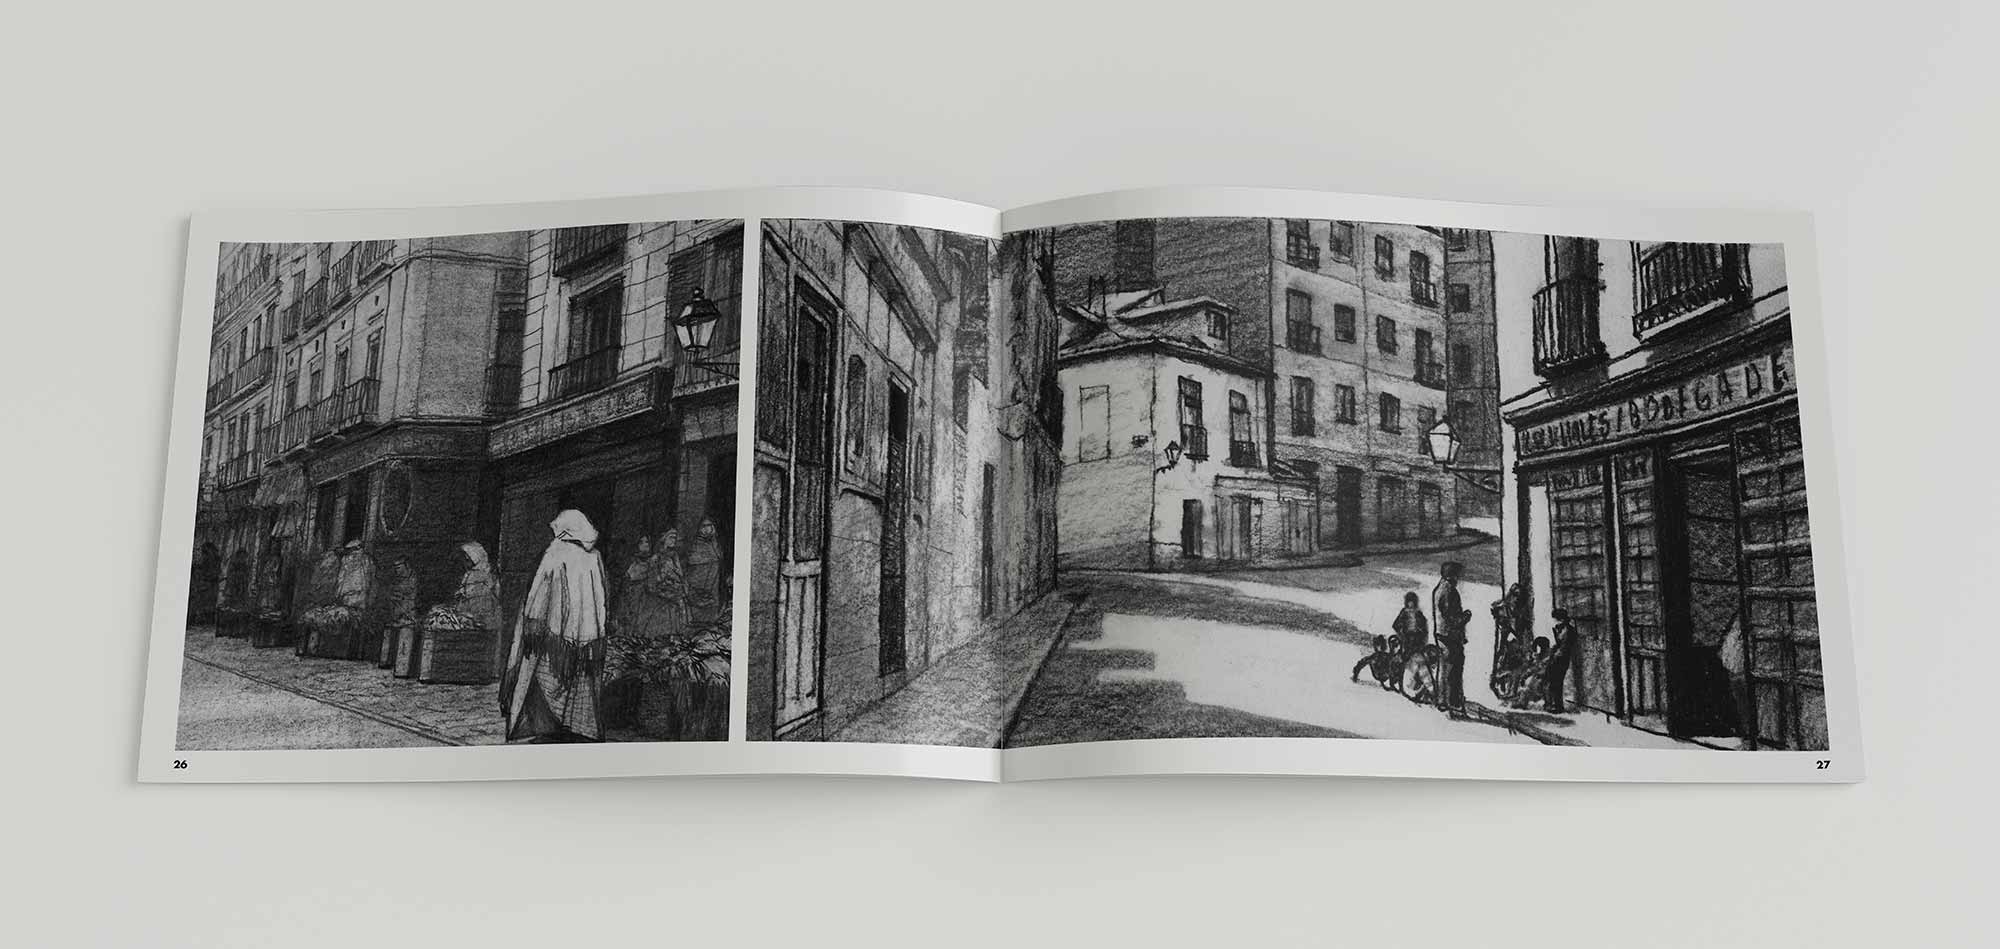 Mario Jodra Libro de artista ilustrado "Viejo Madrid". Interior. Páginas 26-27